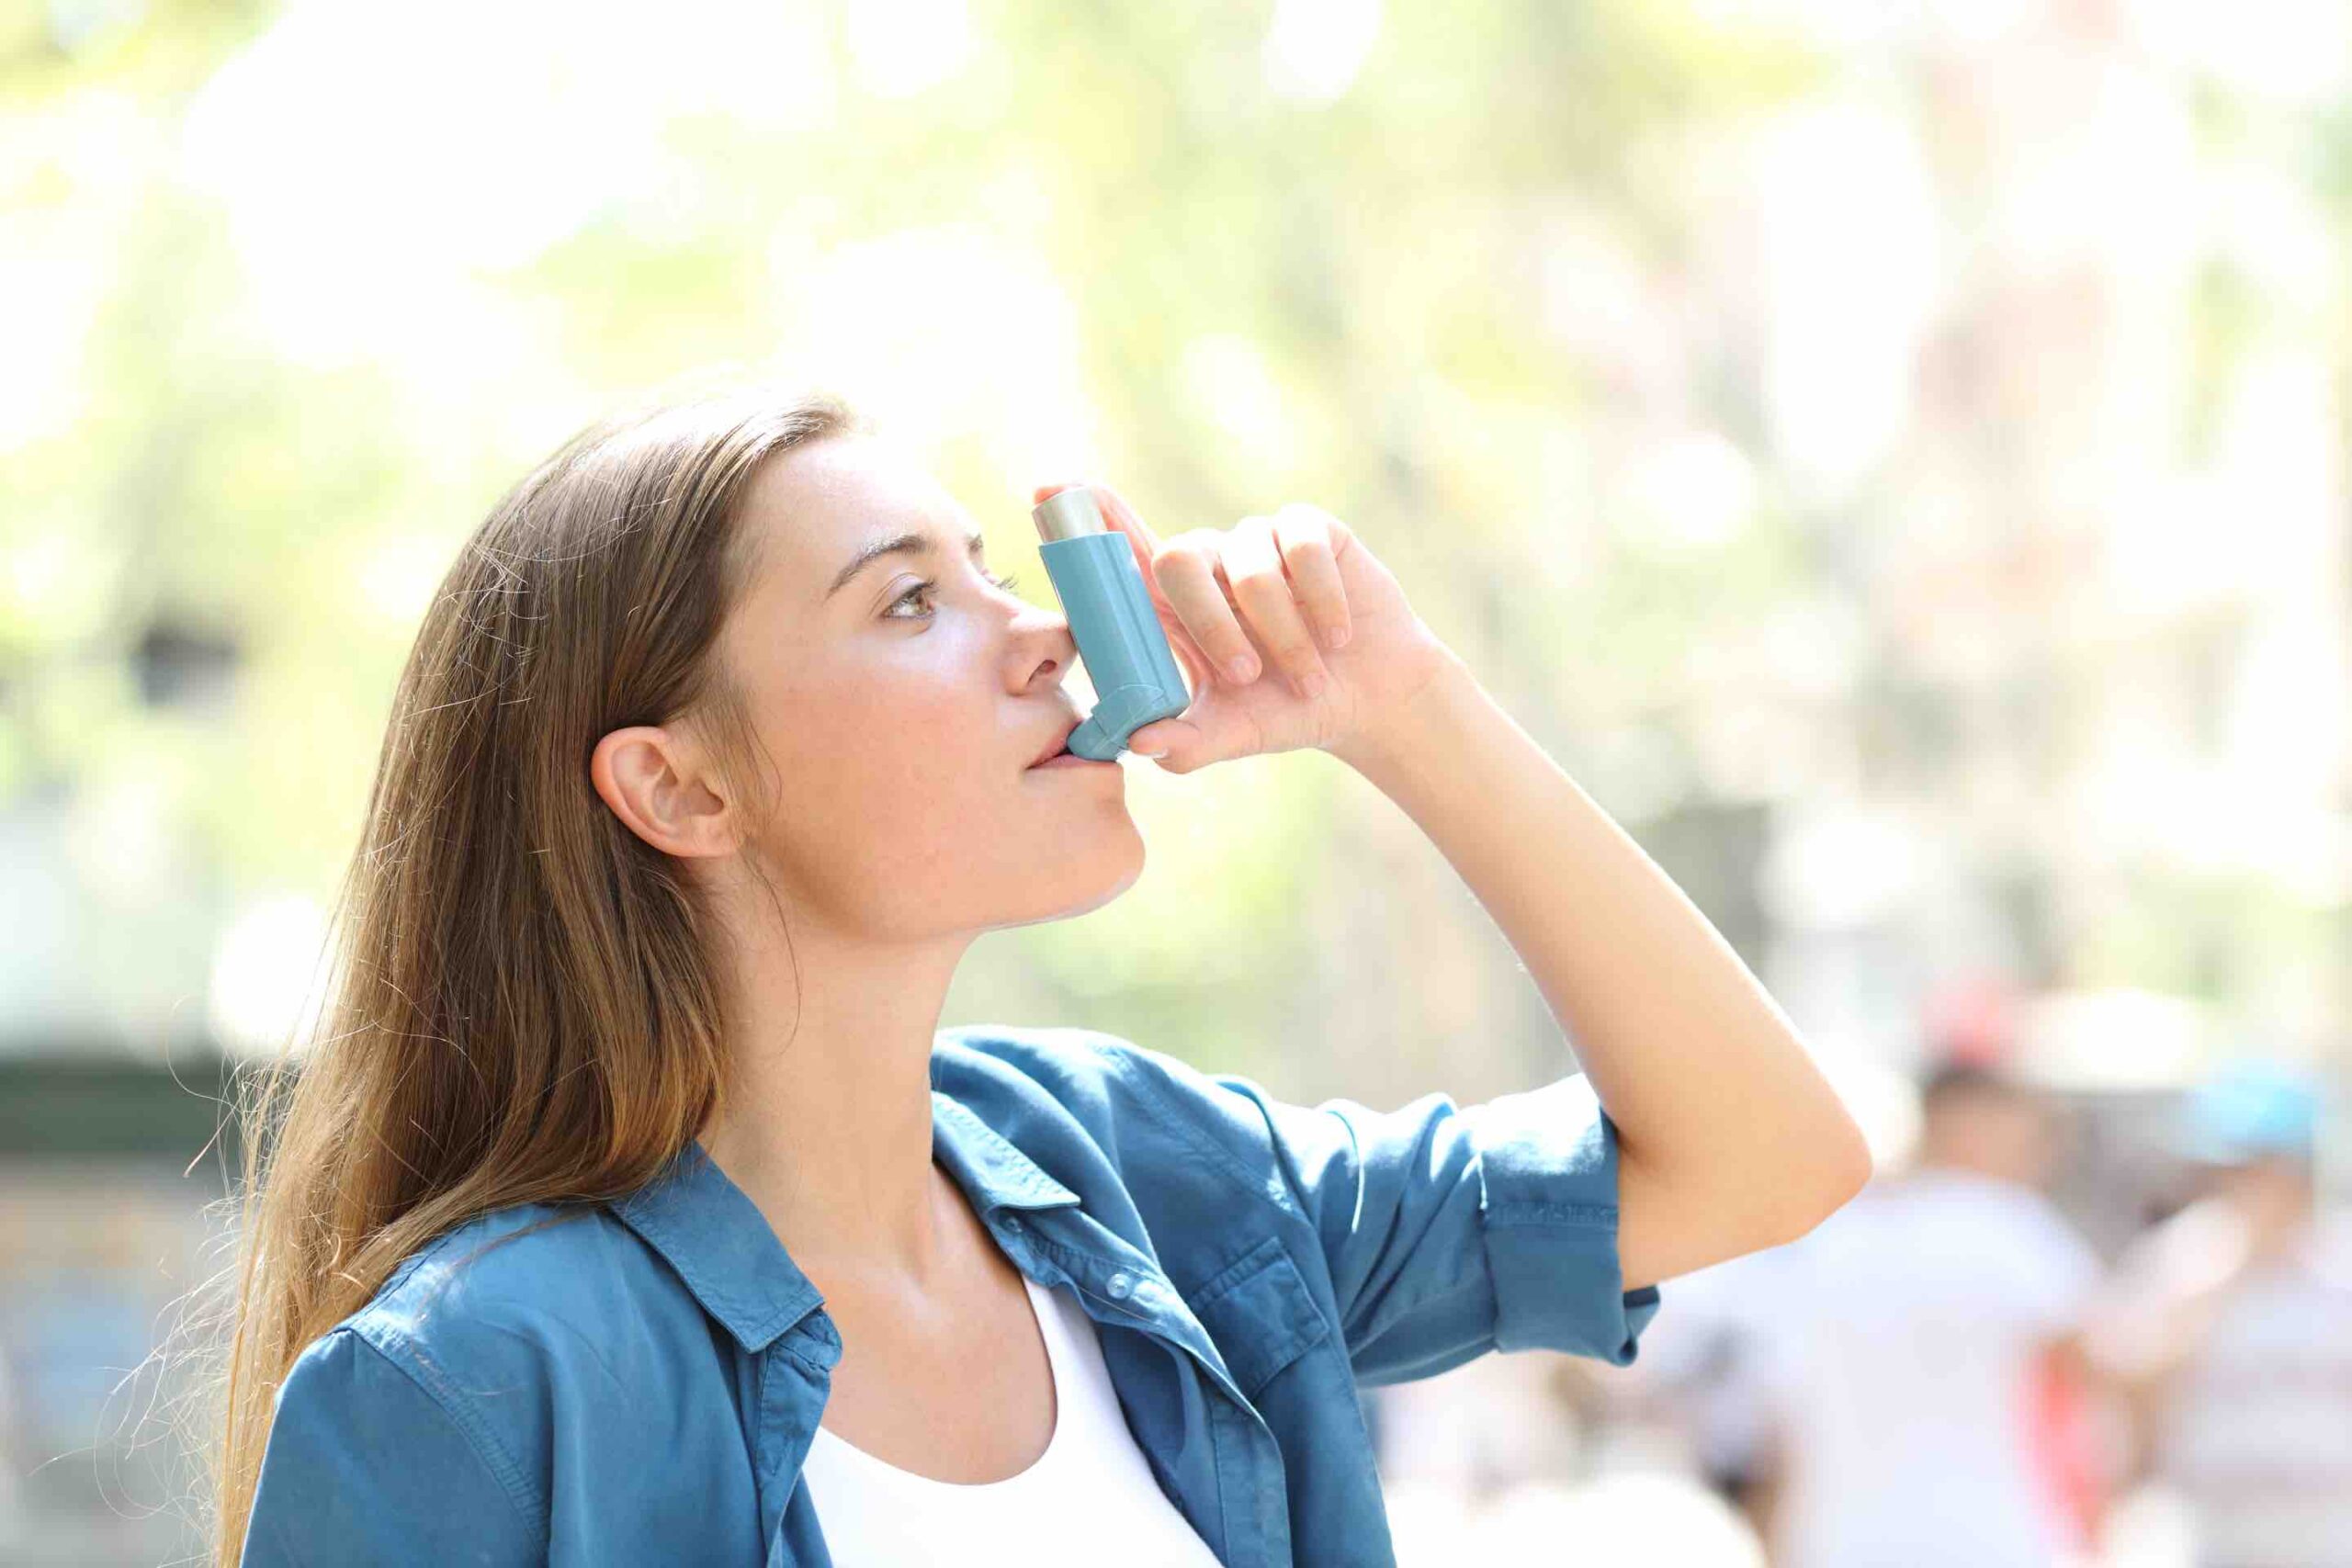 Vrouw met astma inhaleert medicijnen